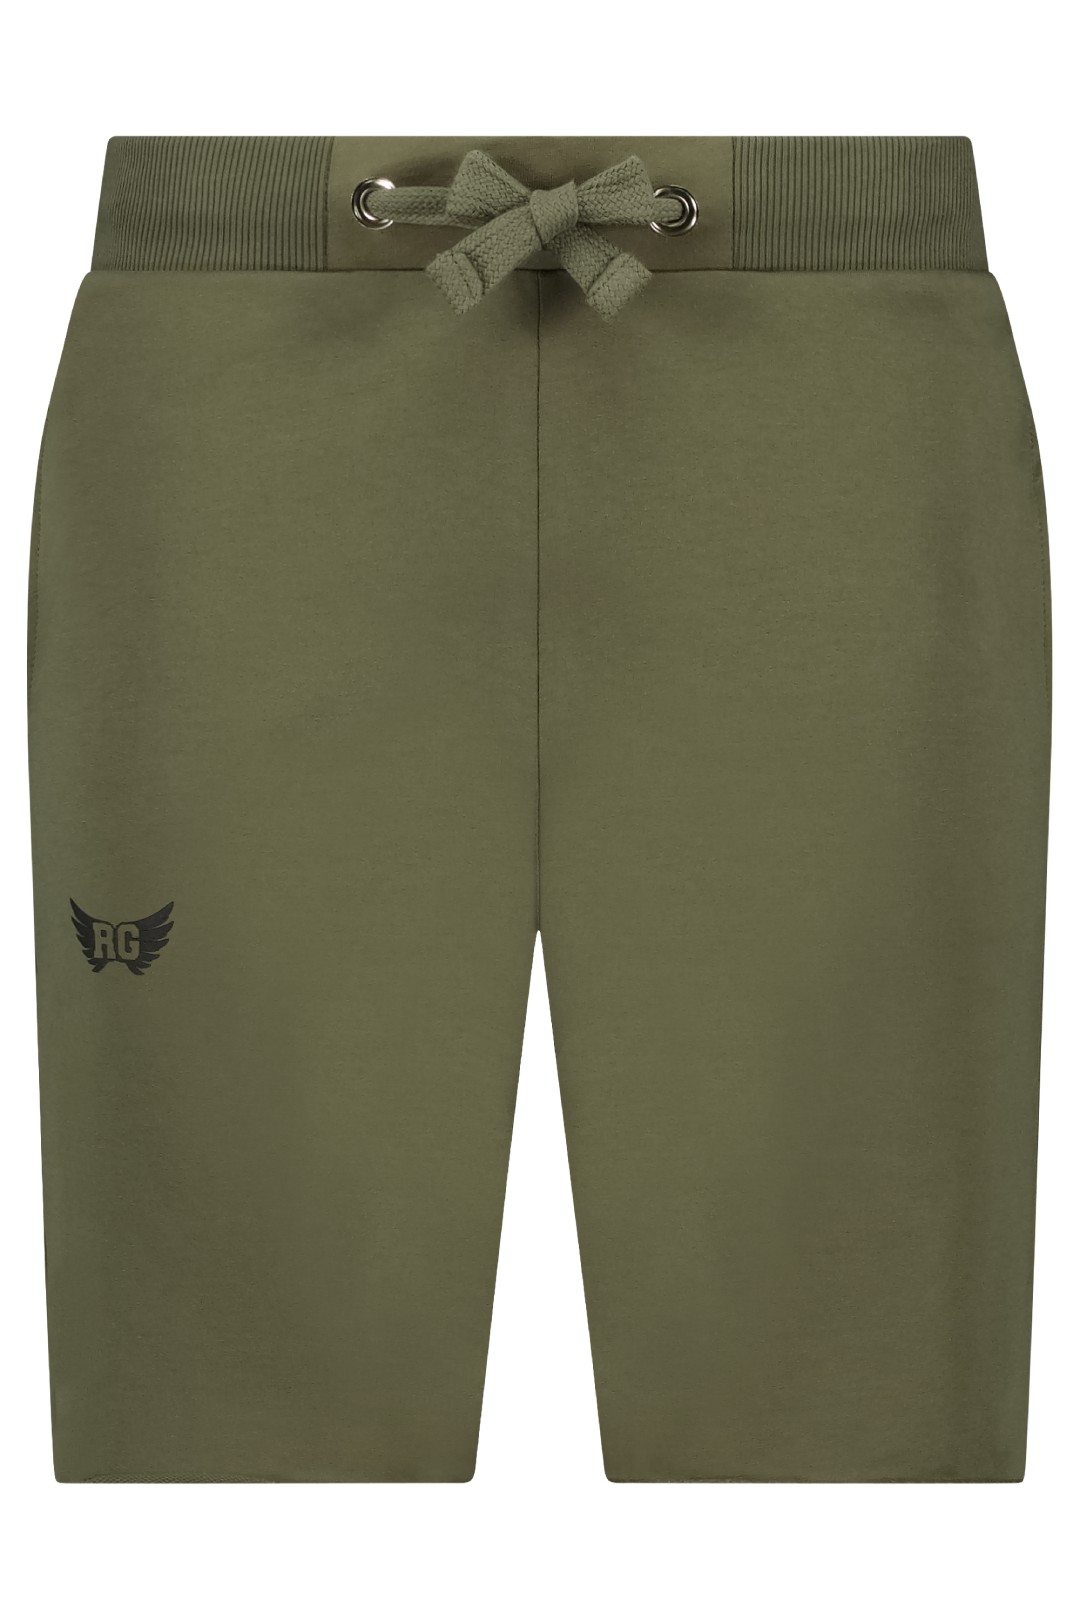 Bodhi sustainable men's yoga shorts-Olive-4022206